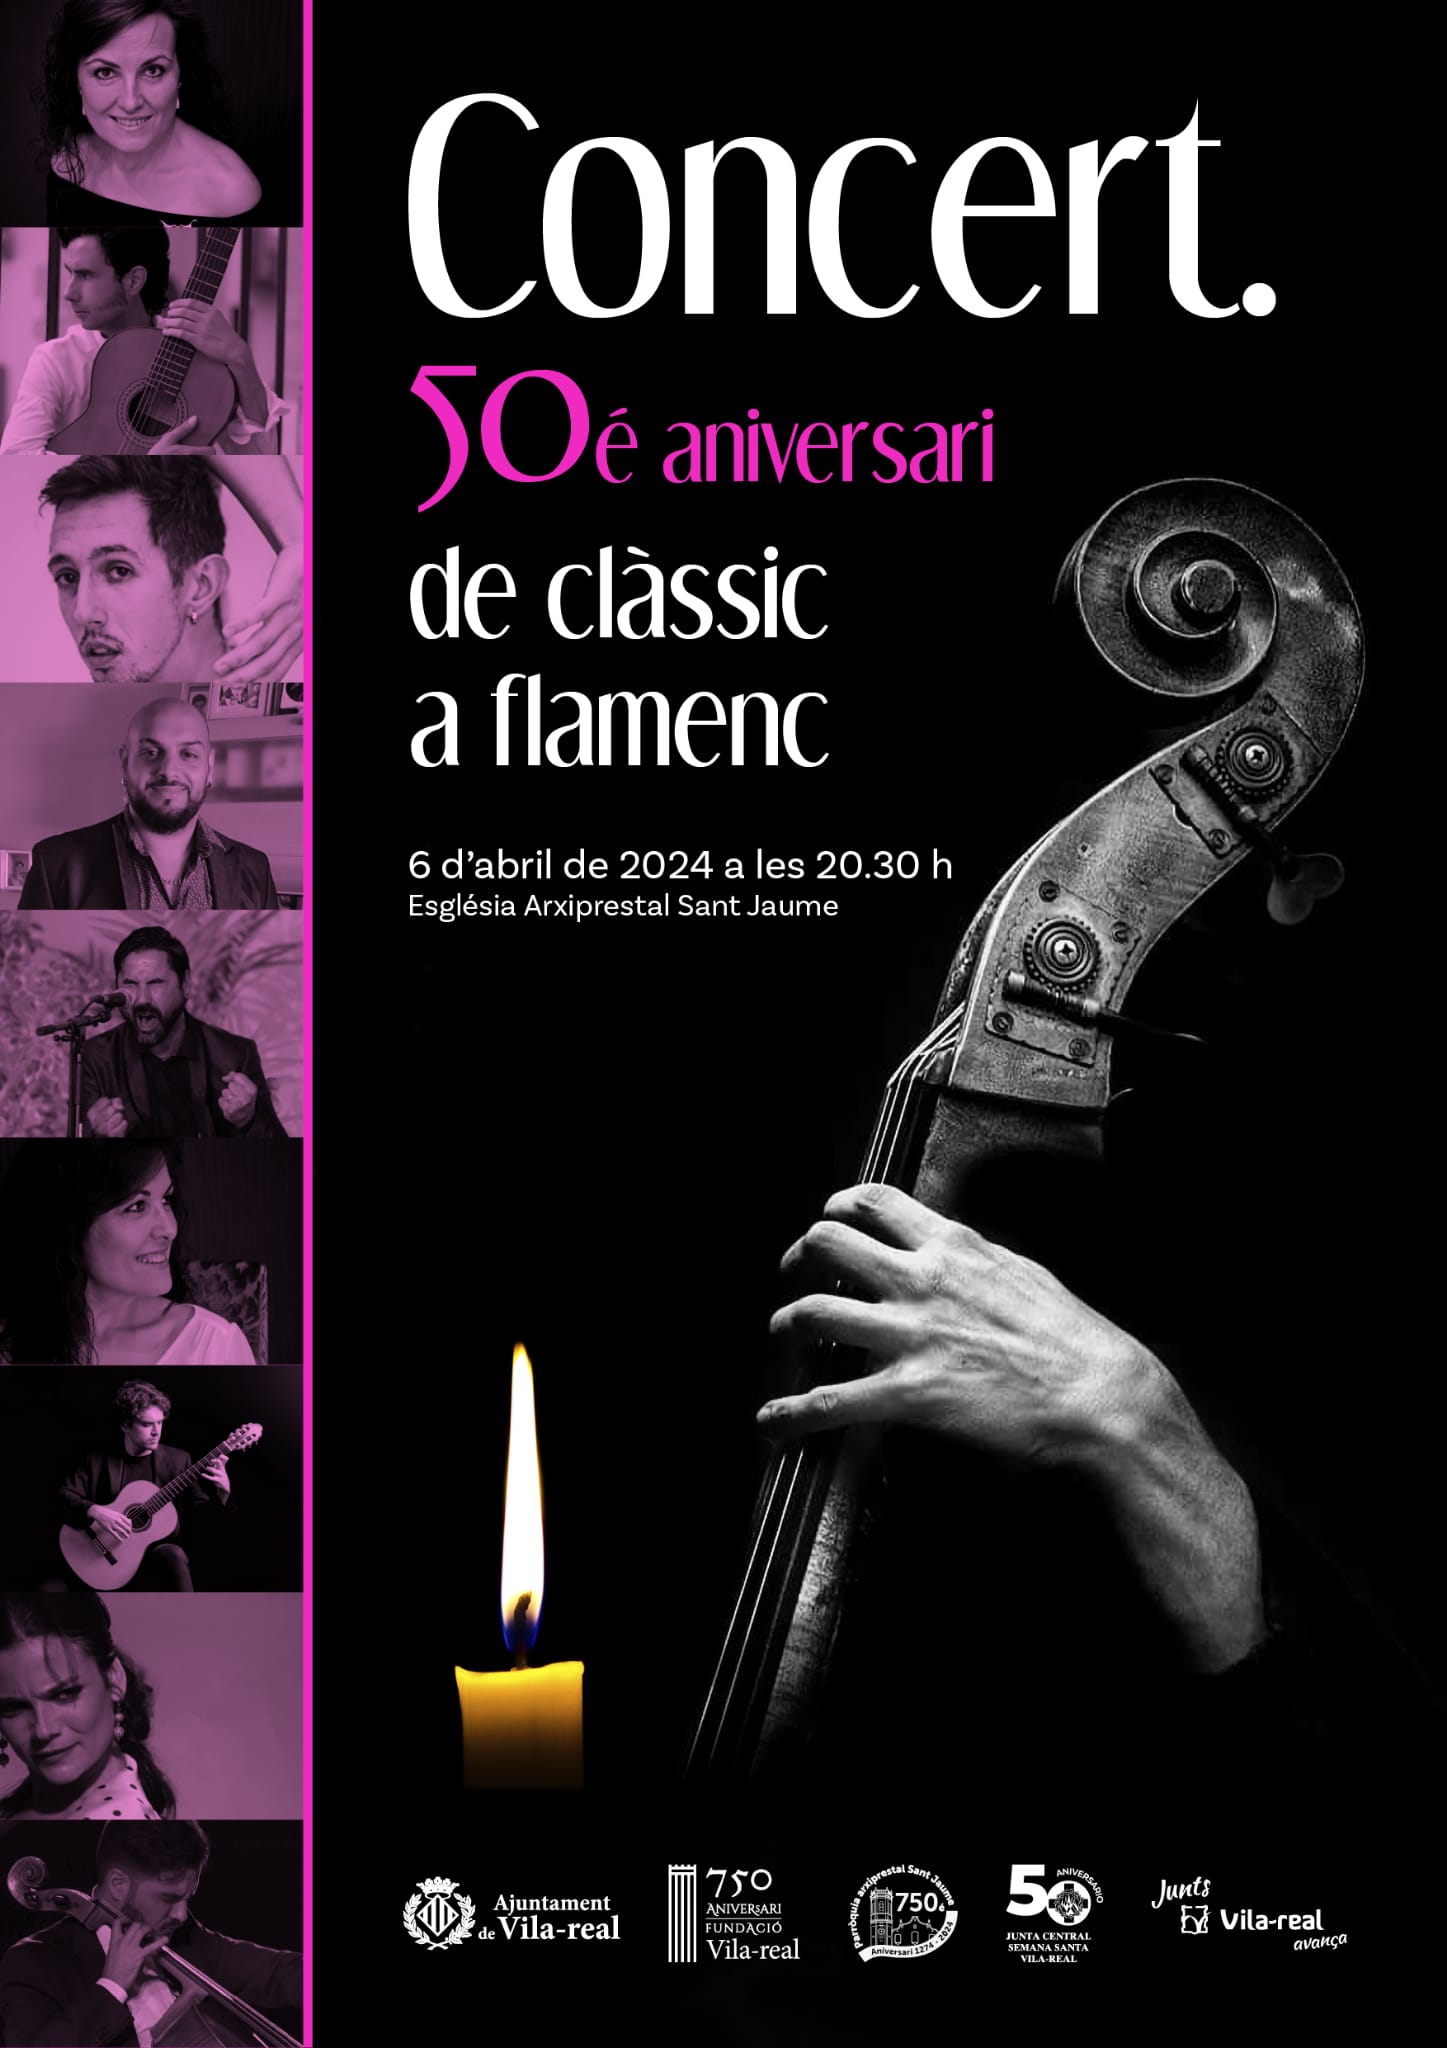 Acabem la Setmana Santa amb el Concert 50 aniversari de clàssic a flamenc, parlem amb Gisela i Rosanna Morales i membres de Junta Central de Setmana Santa de Vila-real